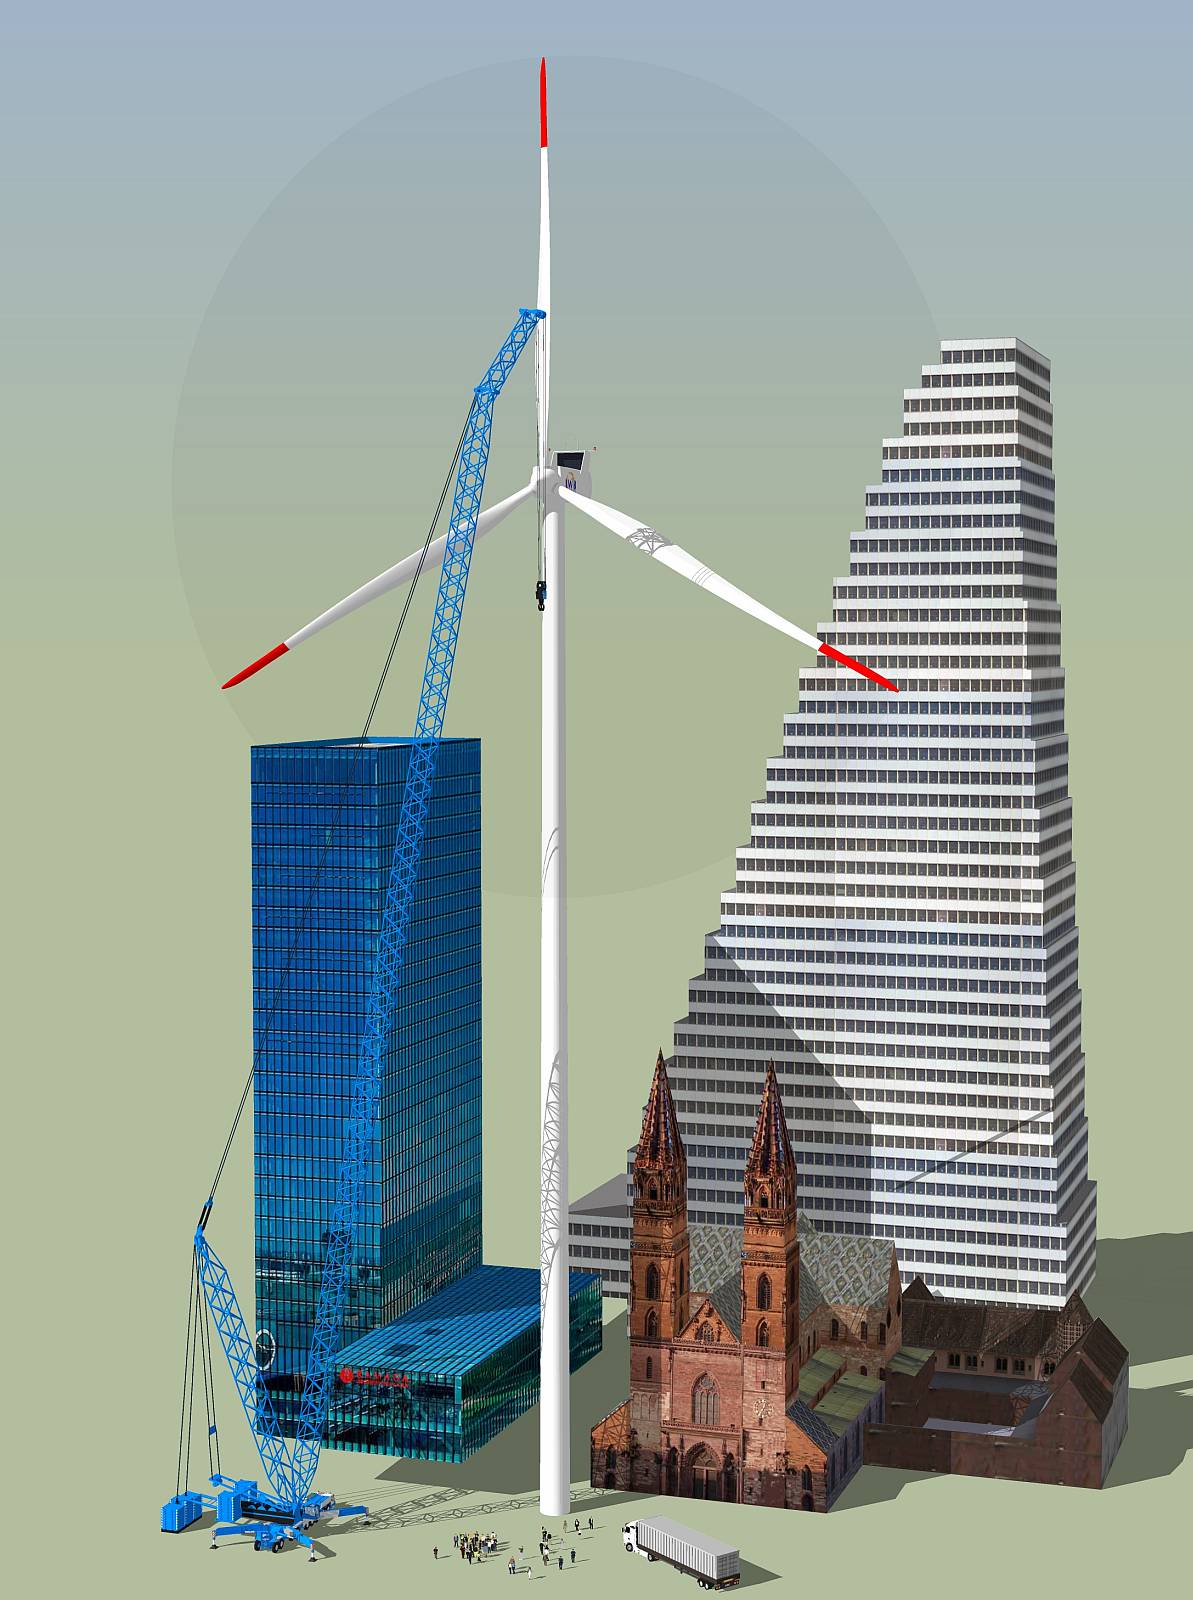 Grössenvergleich einer Vestas V112-Anlage (Rotor Ø 112 m, Nabenhöhe 140 m) mit dem Roche-Turm, Messeturm und dem Basler Münster - Gigantismus pur!